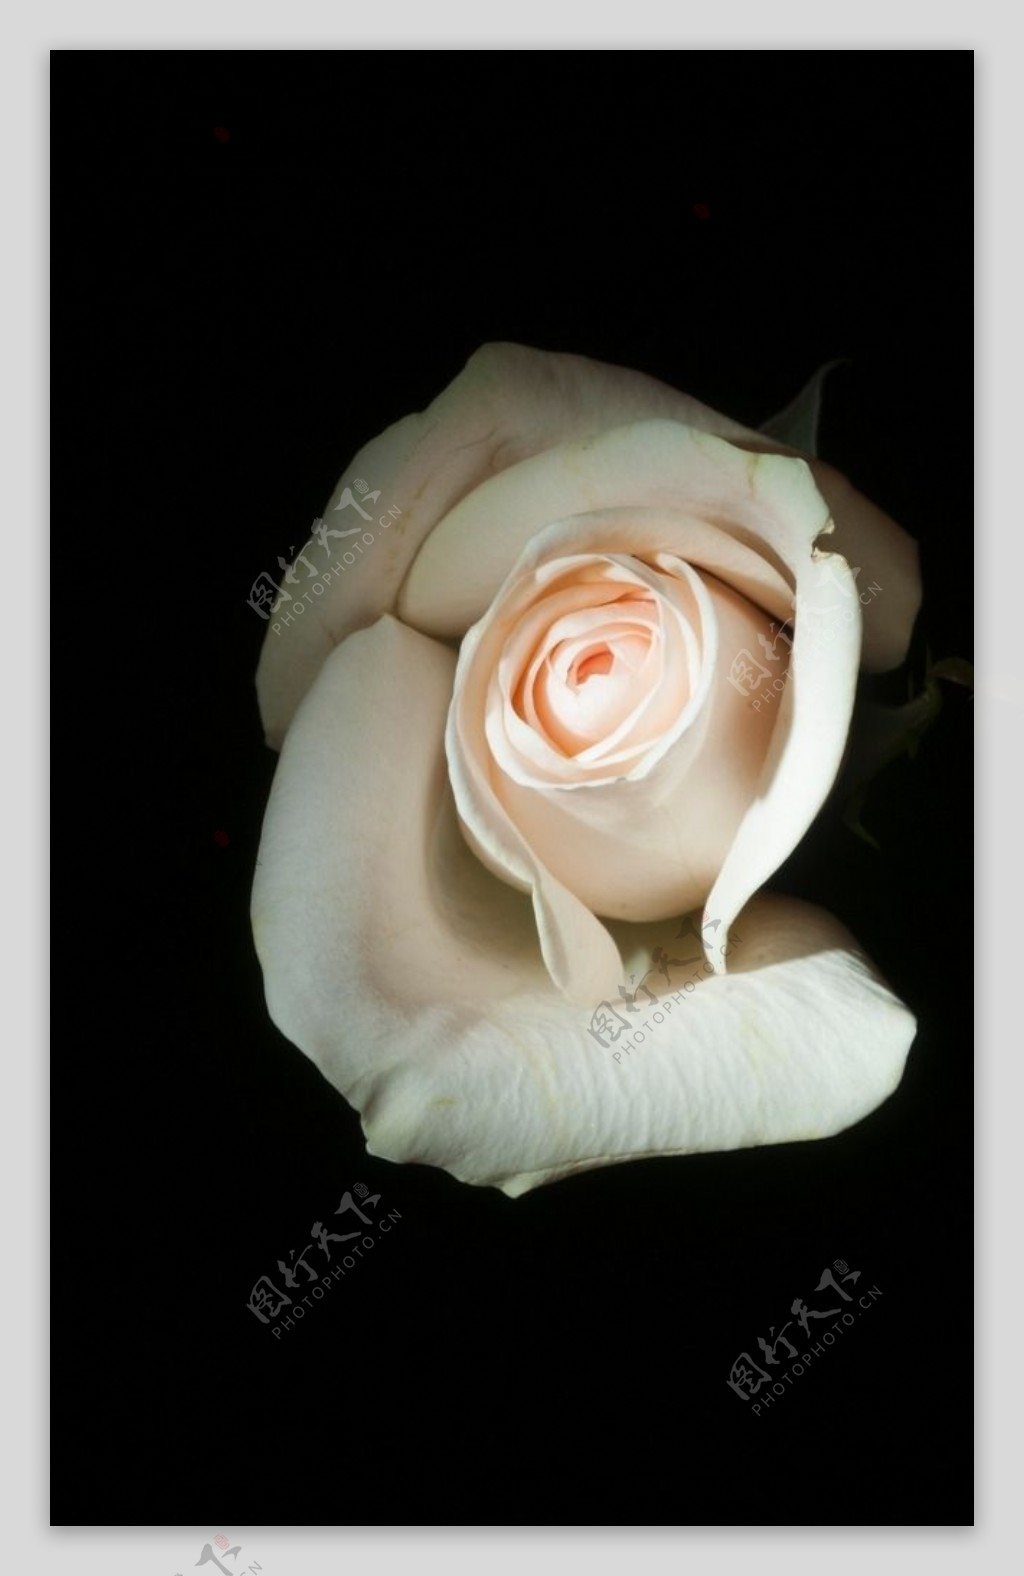 白色玫瑰